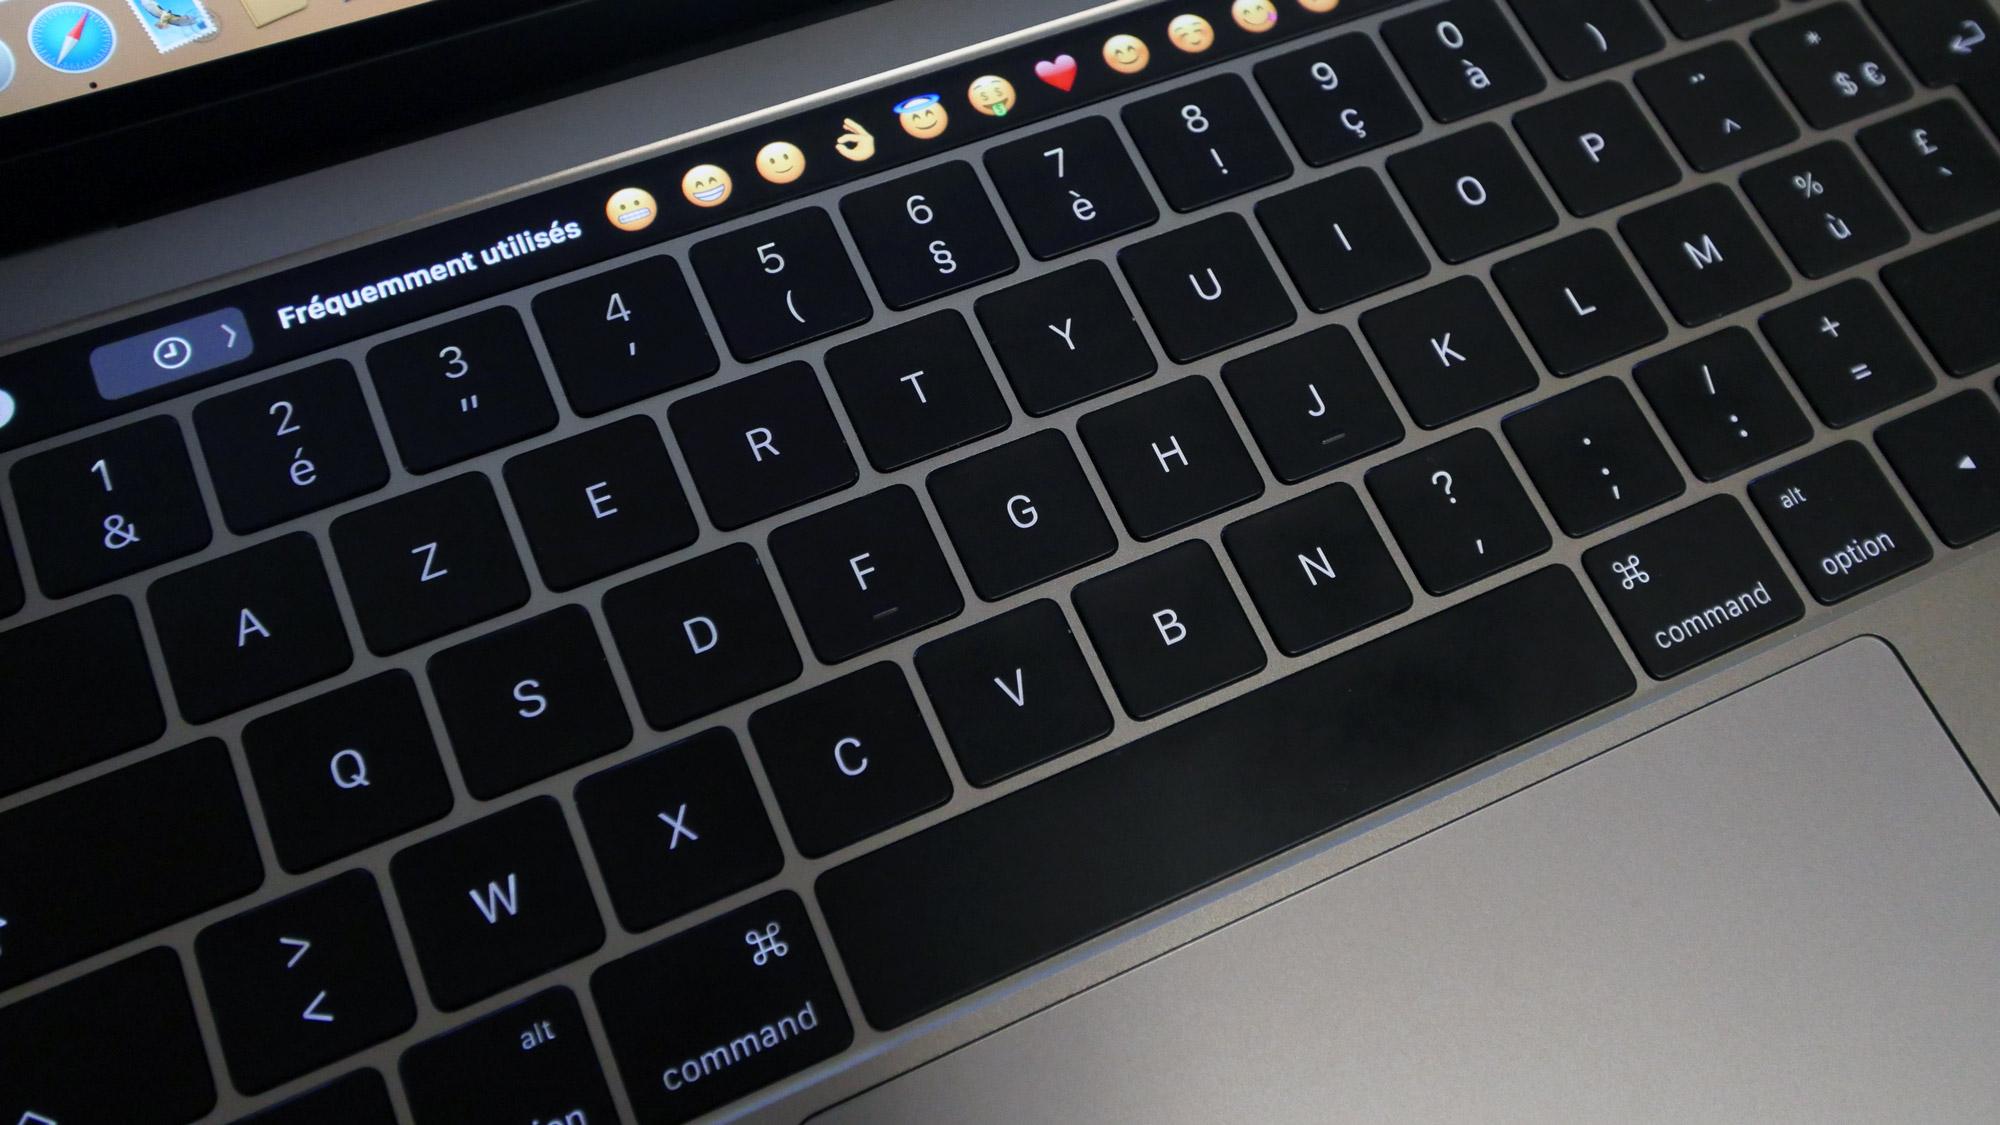 MacBook Pro 2021 : ce serait sans la TouchBar selon les plans